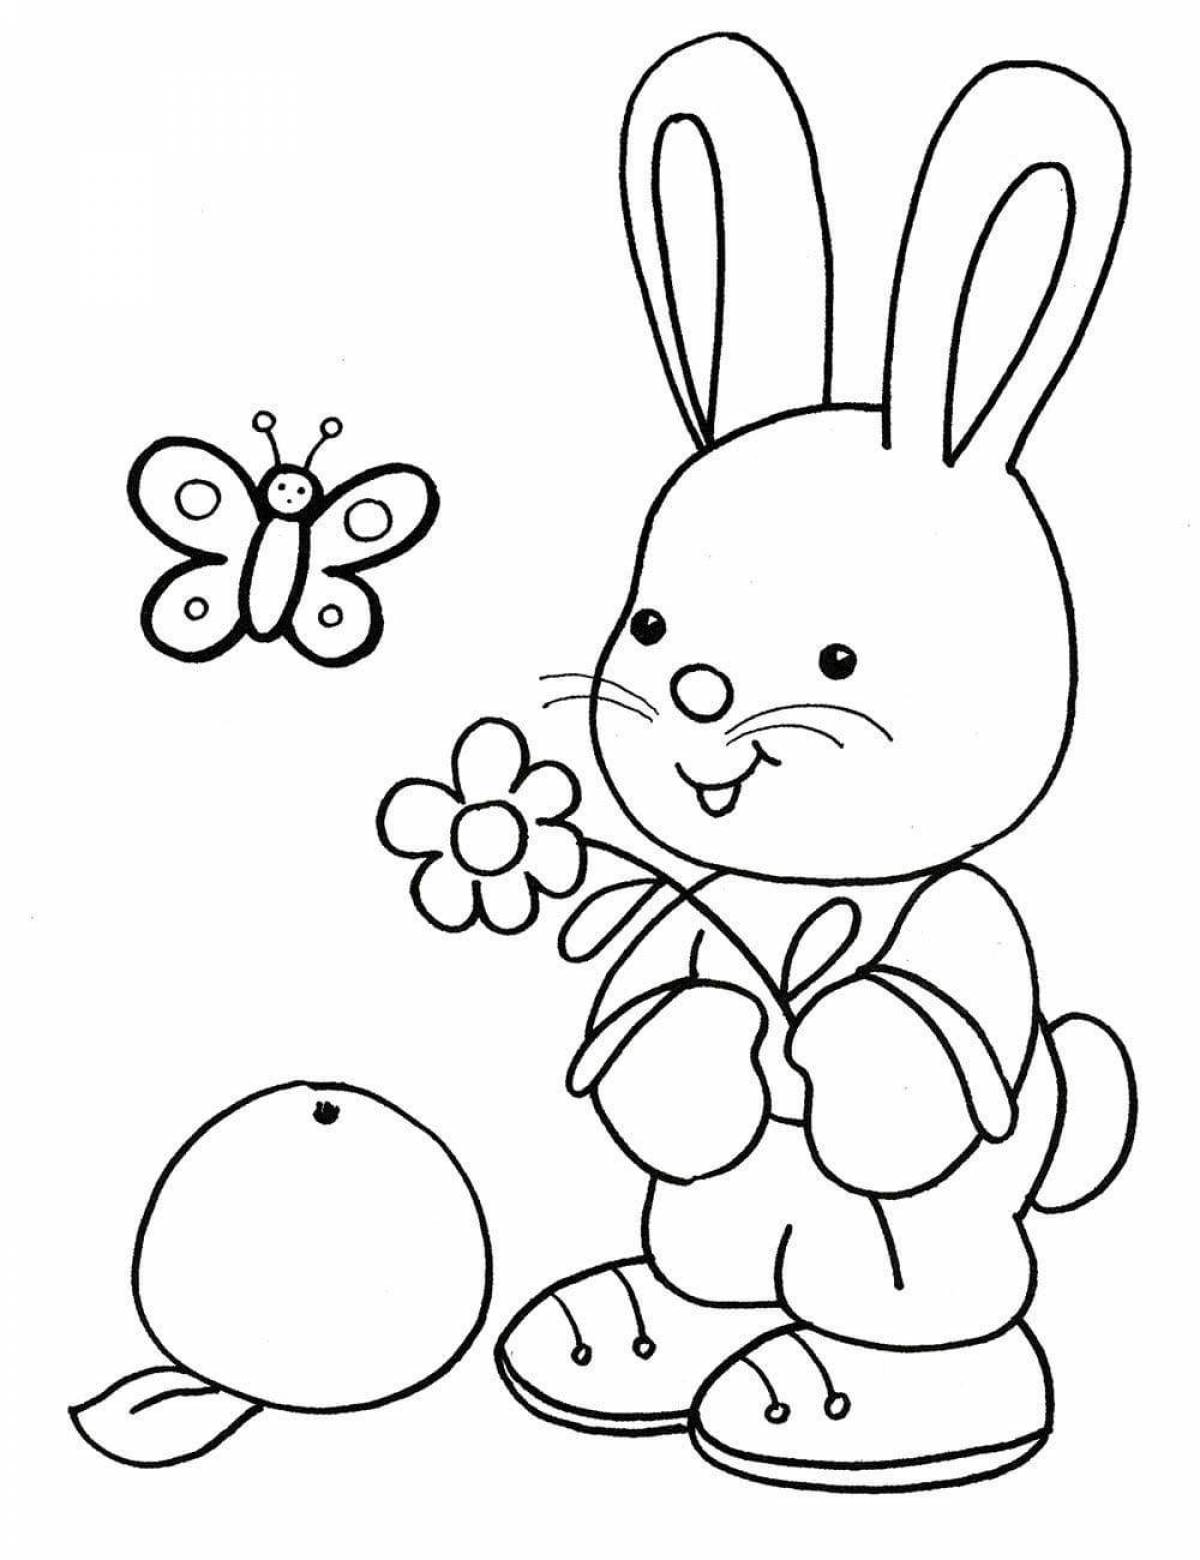 Cozy bunny coloring book